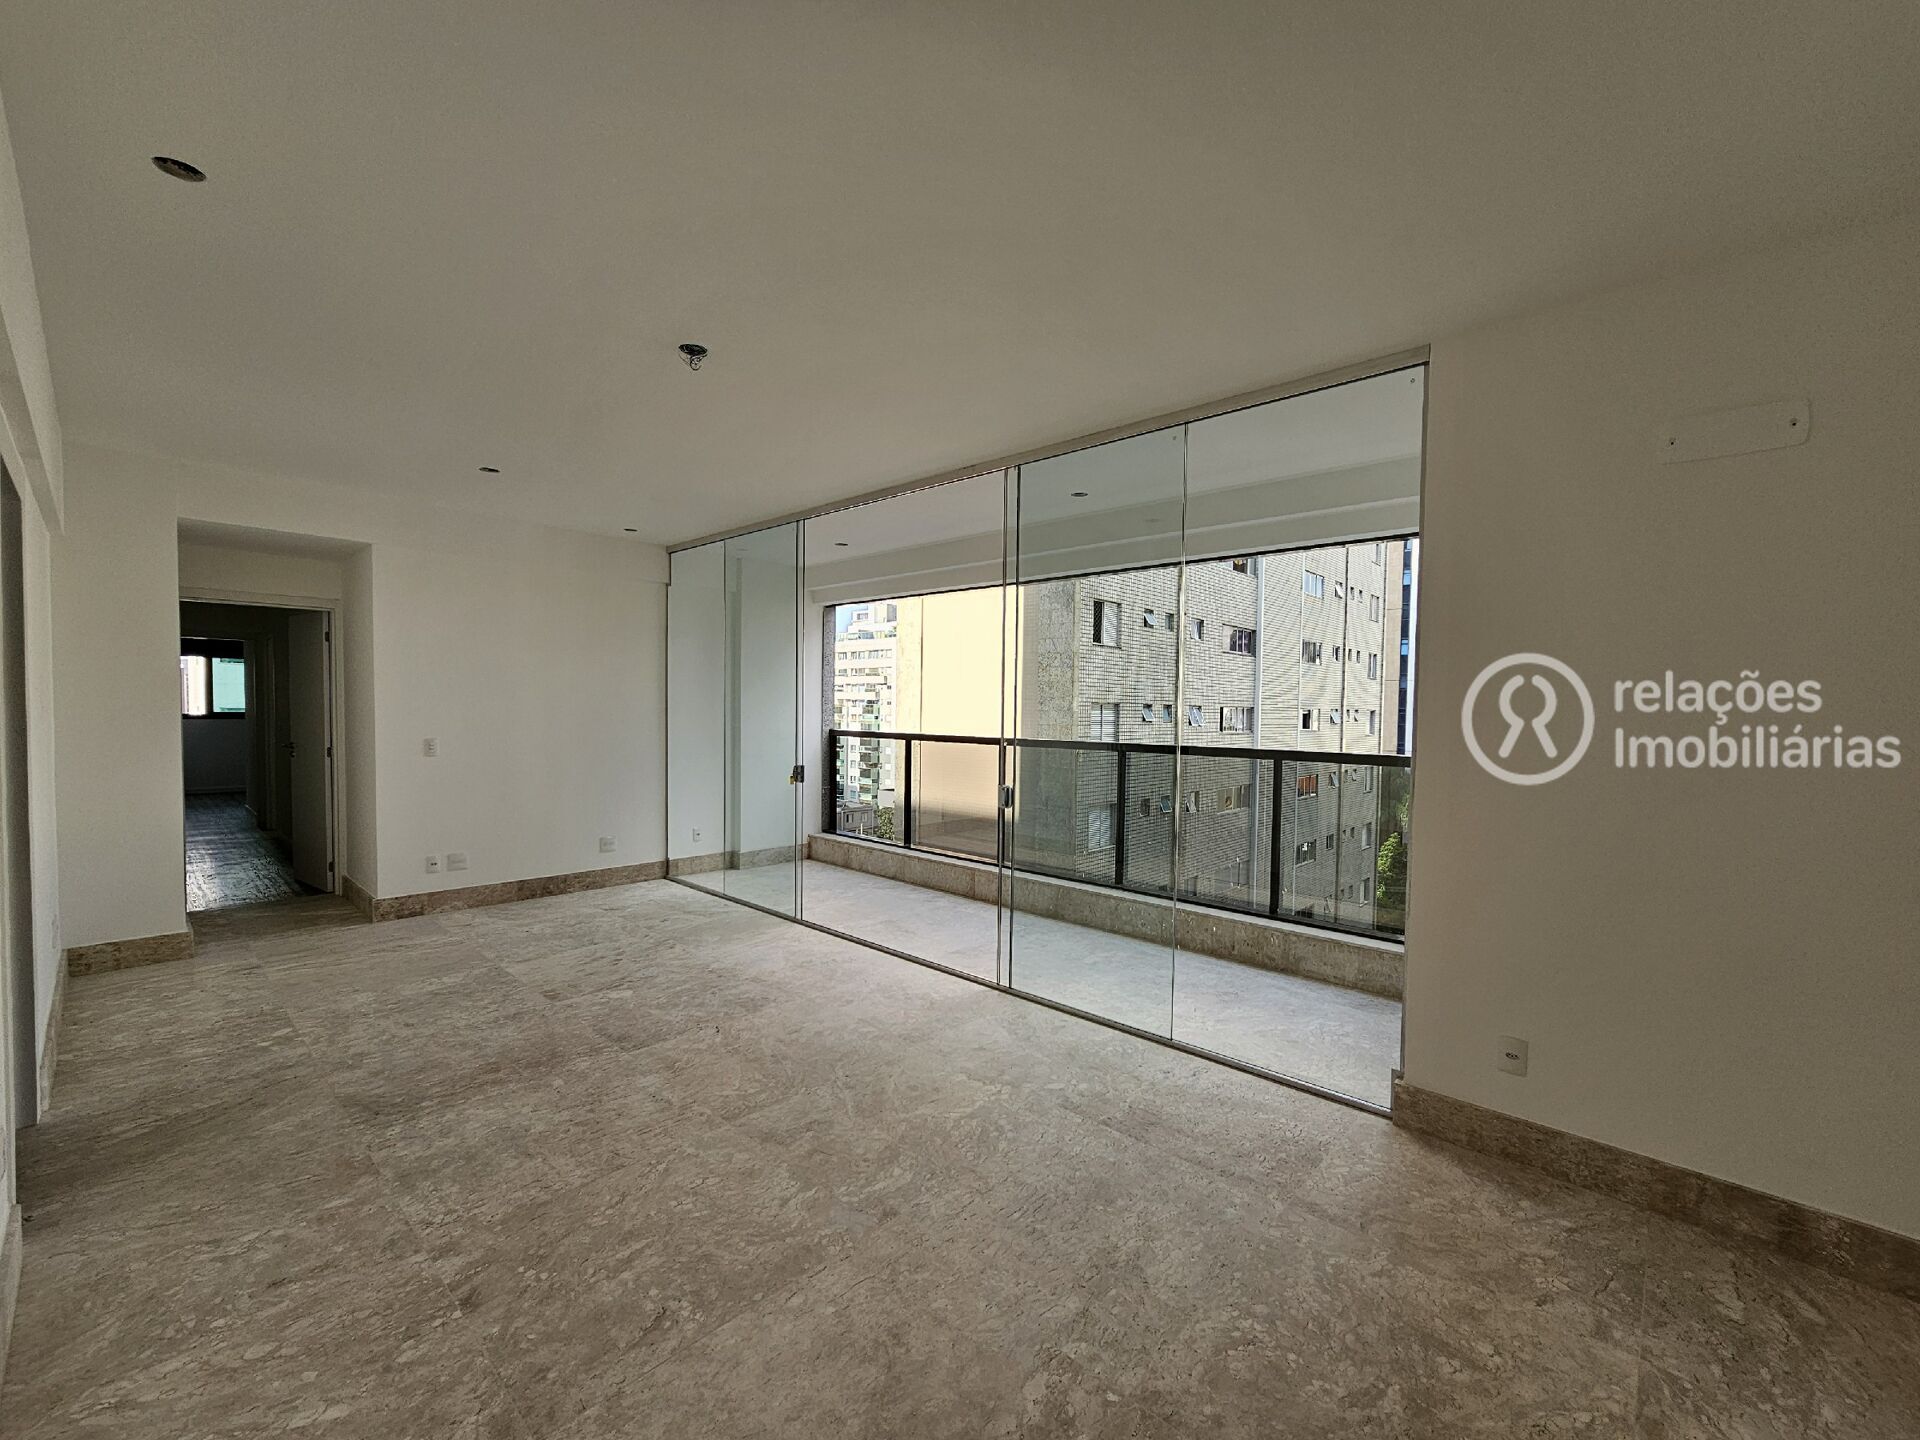 Apartamento, 4 quartos, 130 m² - Foto 3